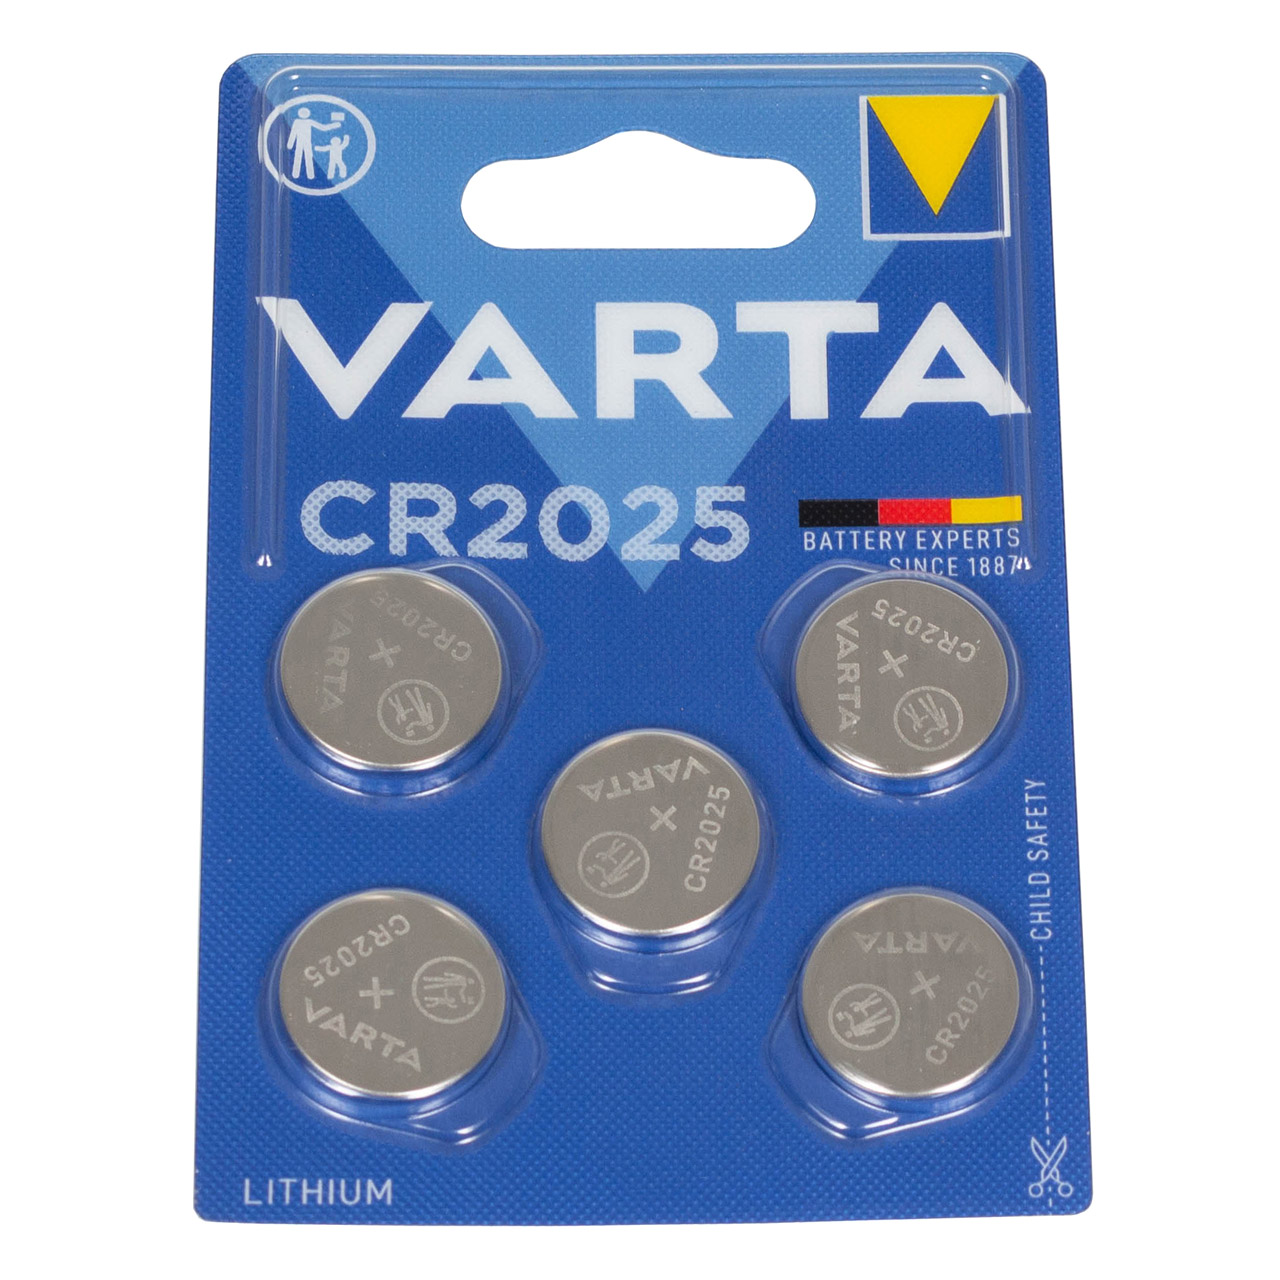 5x VARTA Lithium 3V CR2025 Knopfzelle Knopfbatterie Batterie (MHD 09.2033)